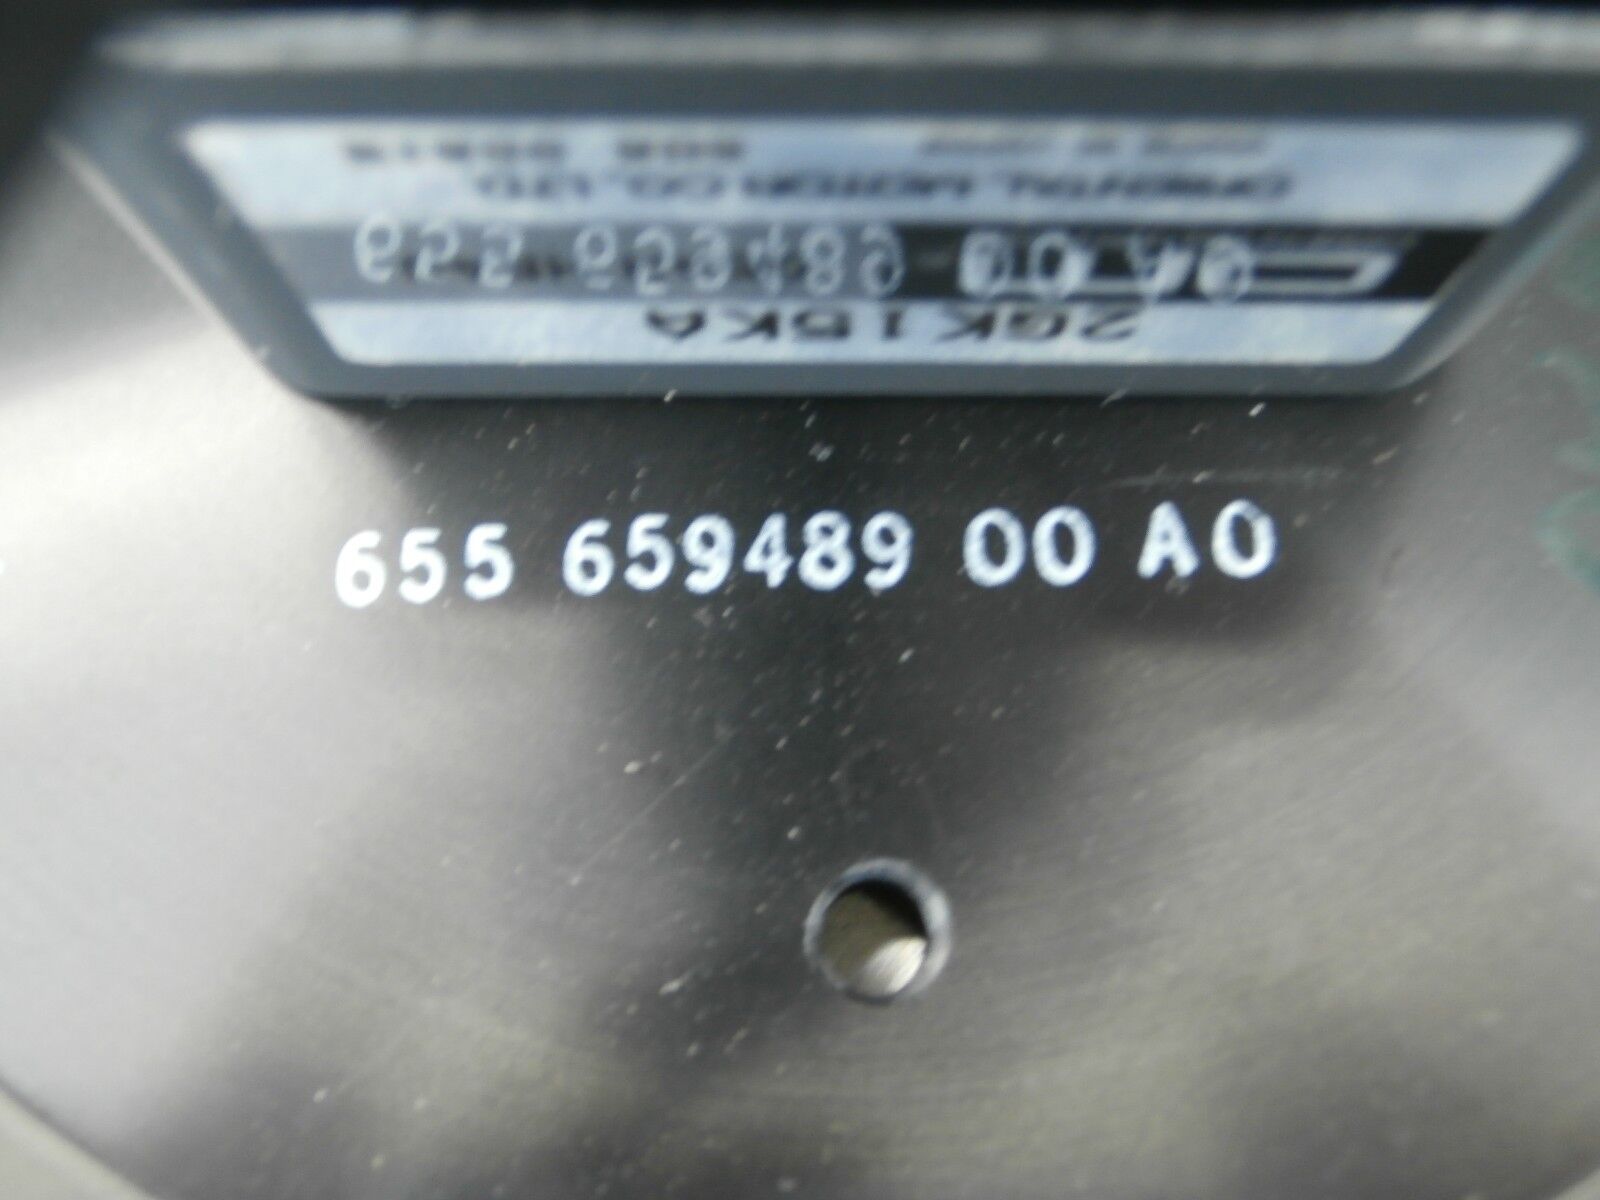 KLA Instruments 200mm Left Wafer Cassette Loader Stage 740-651233-01 2132 Used